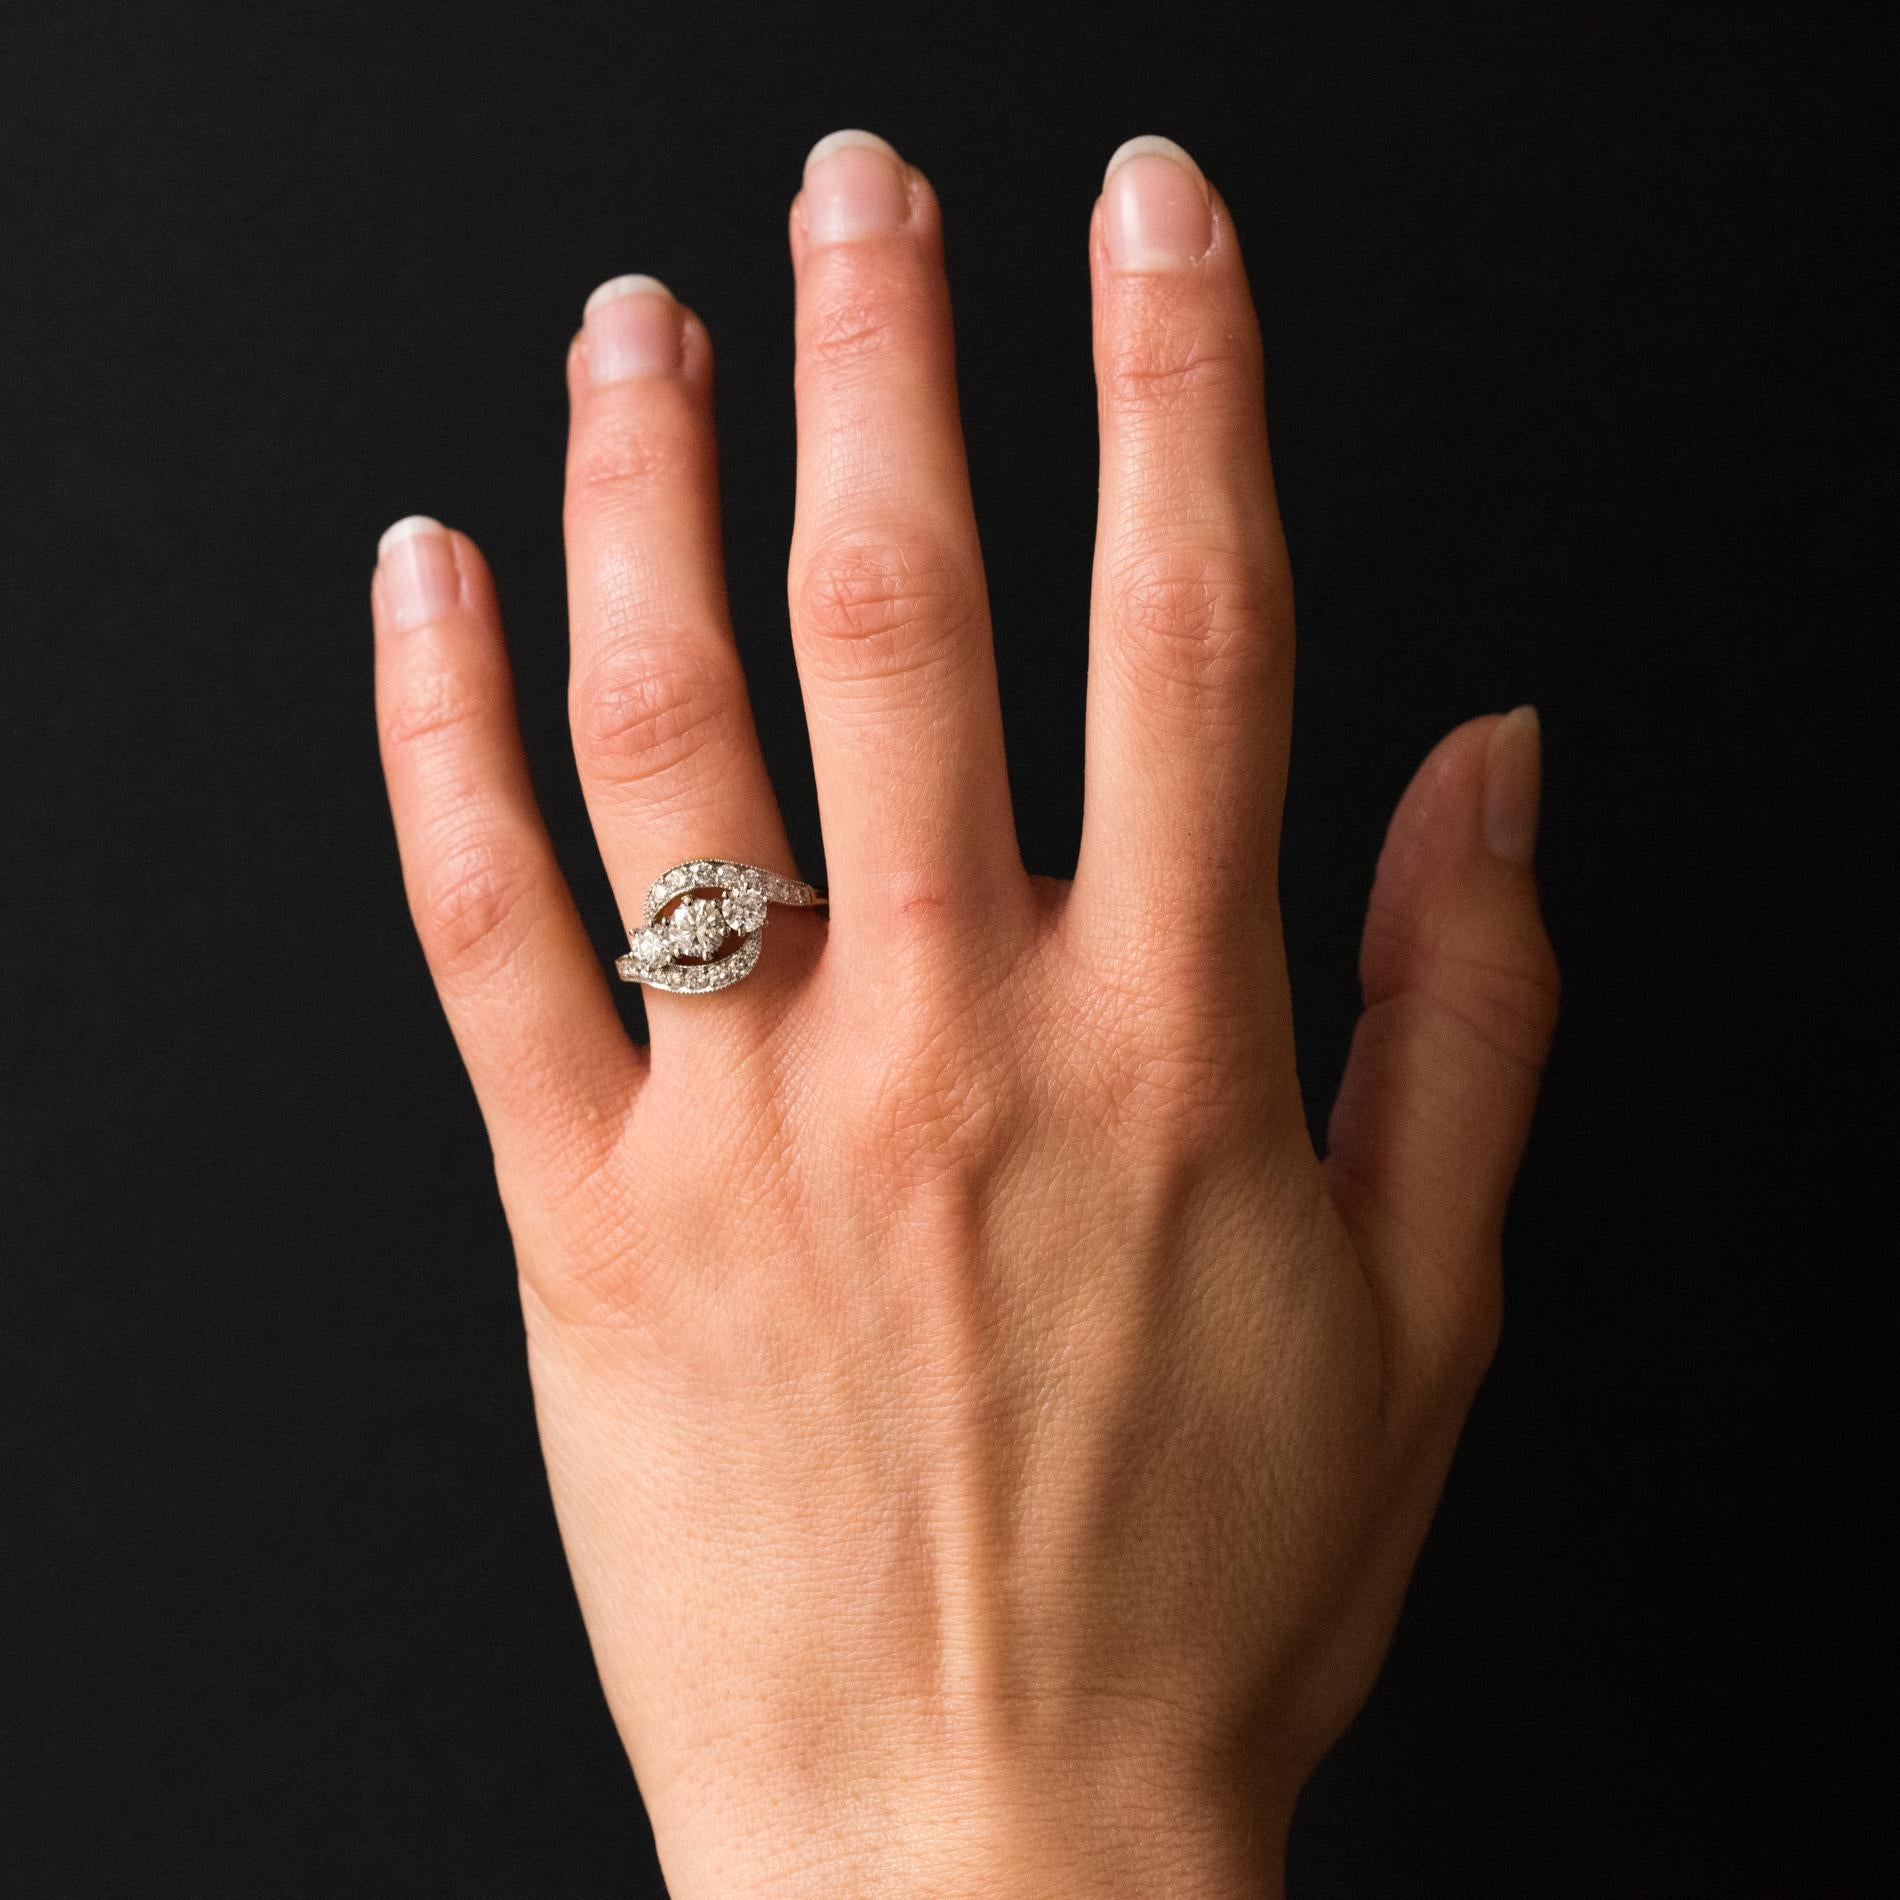 Ring aus 18 Karat Gelbgold und Platin, mit Adler und Hundeköpfen gestempelt.
Ein prächtiger, moderner Ring, der einen Wirbel aus Brillanten bildet, die oben 3 mit Krallen gefasste Diamanten umgeben.
Gesamtgewicht des zentralen Diamanten: ca. 0,40